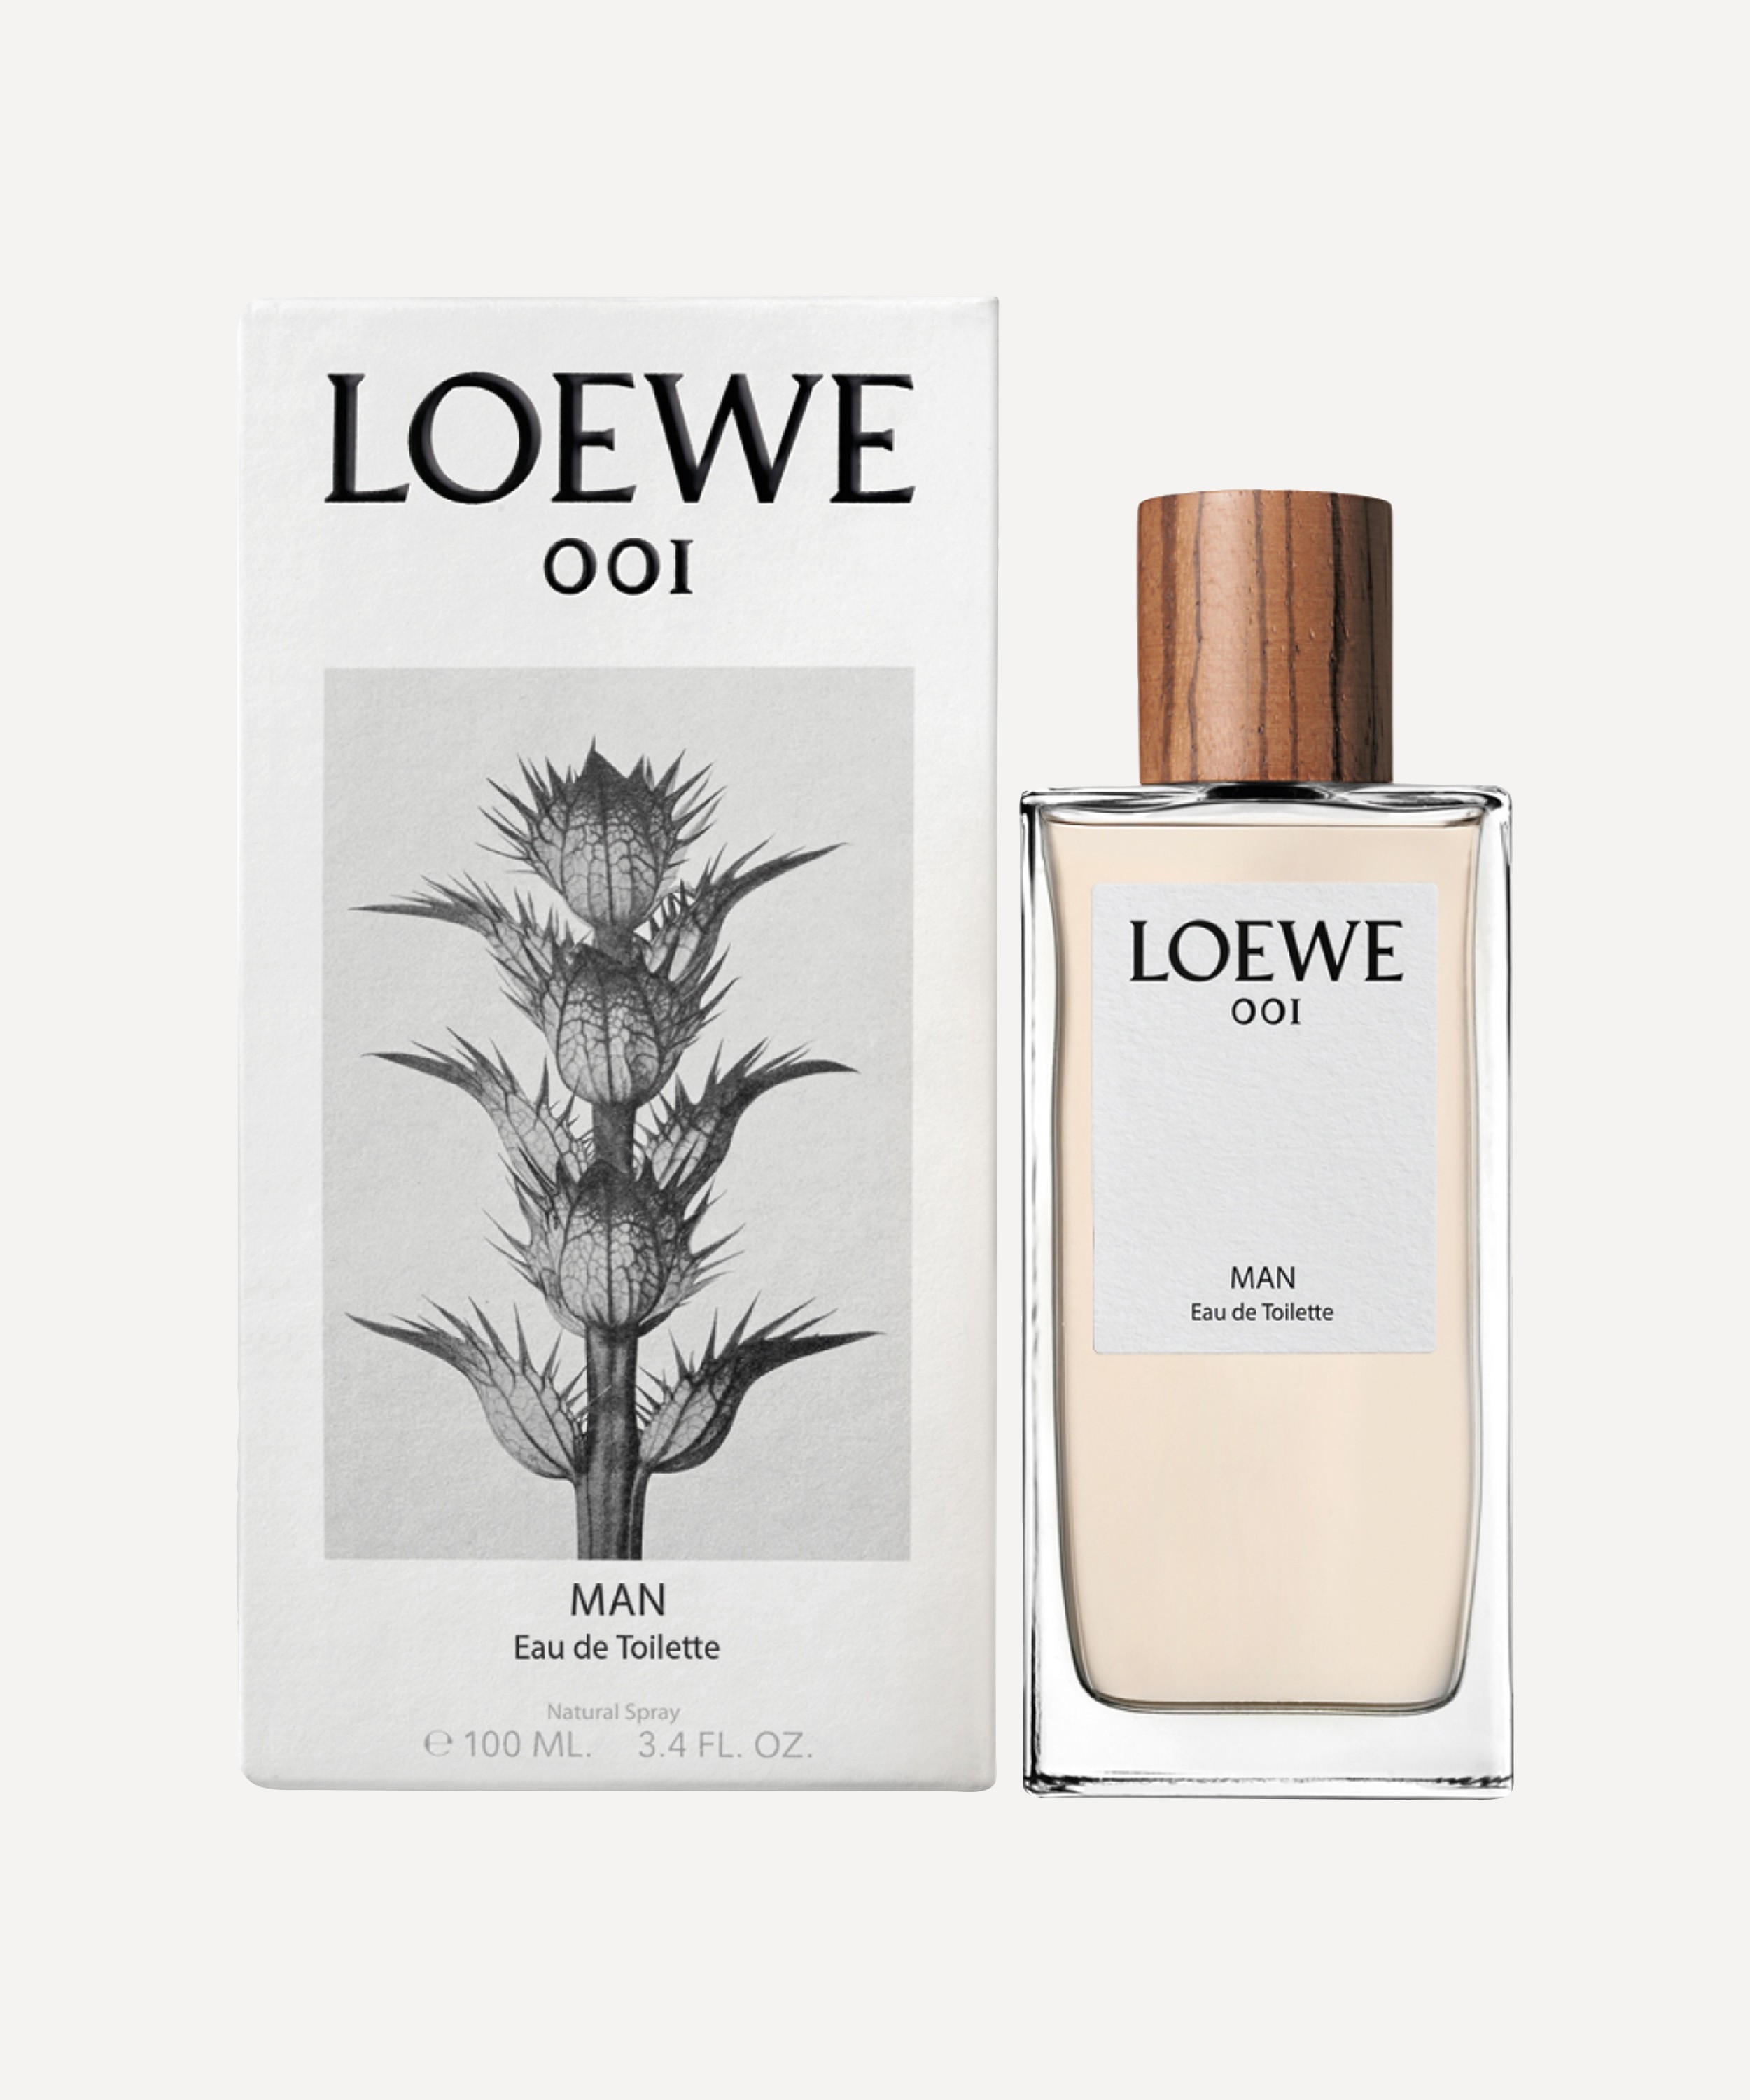 Loewe 001 Man Edt Spray 53976 SPANIEN Karton à 1 Flasche x 100 ml 